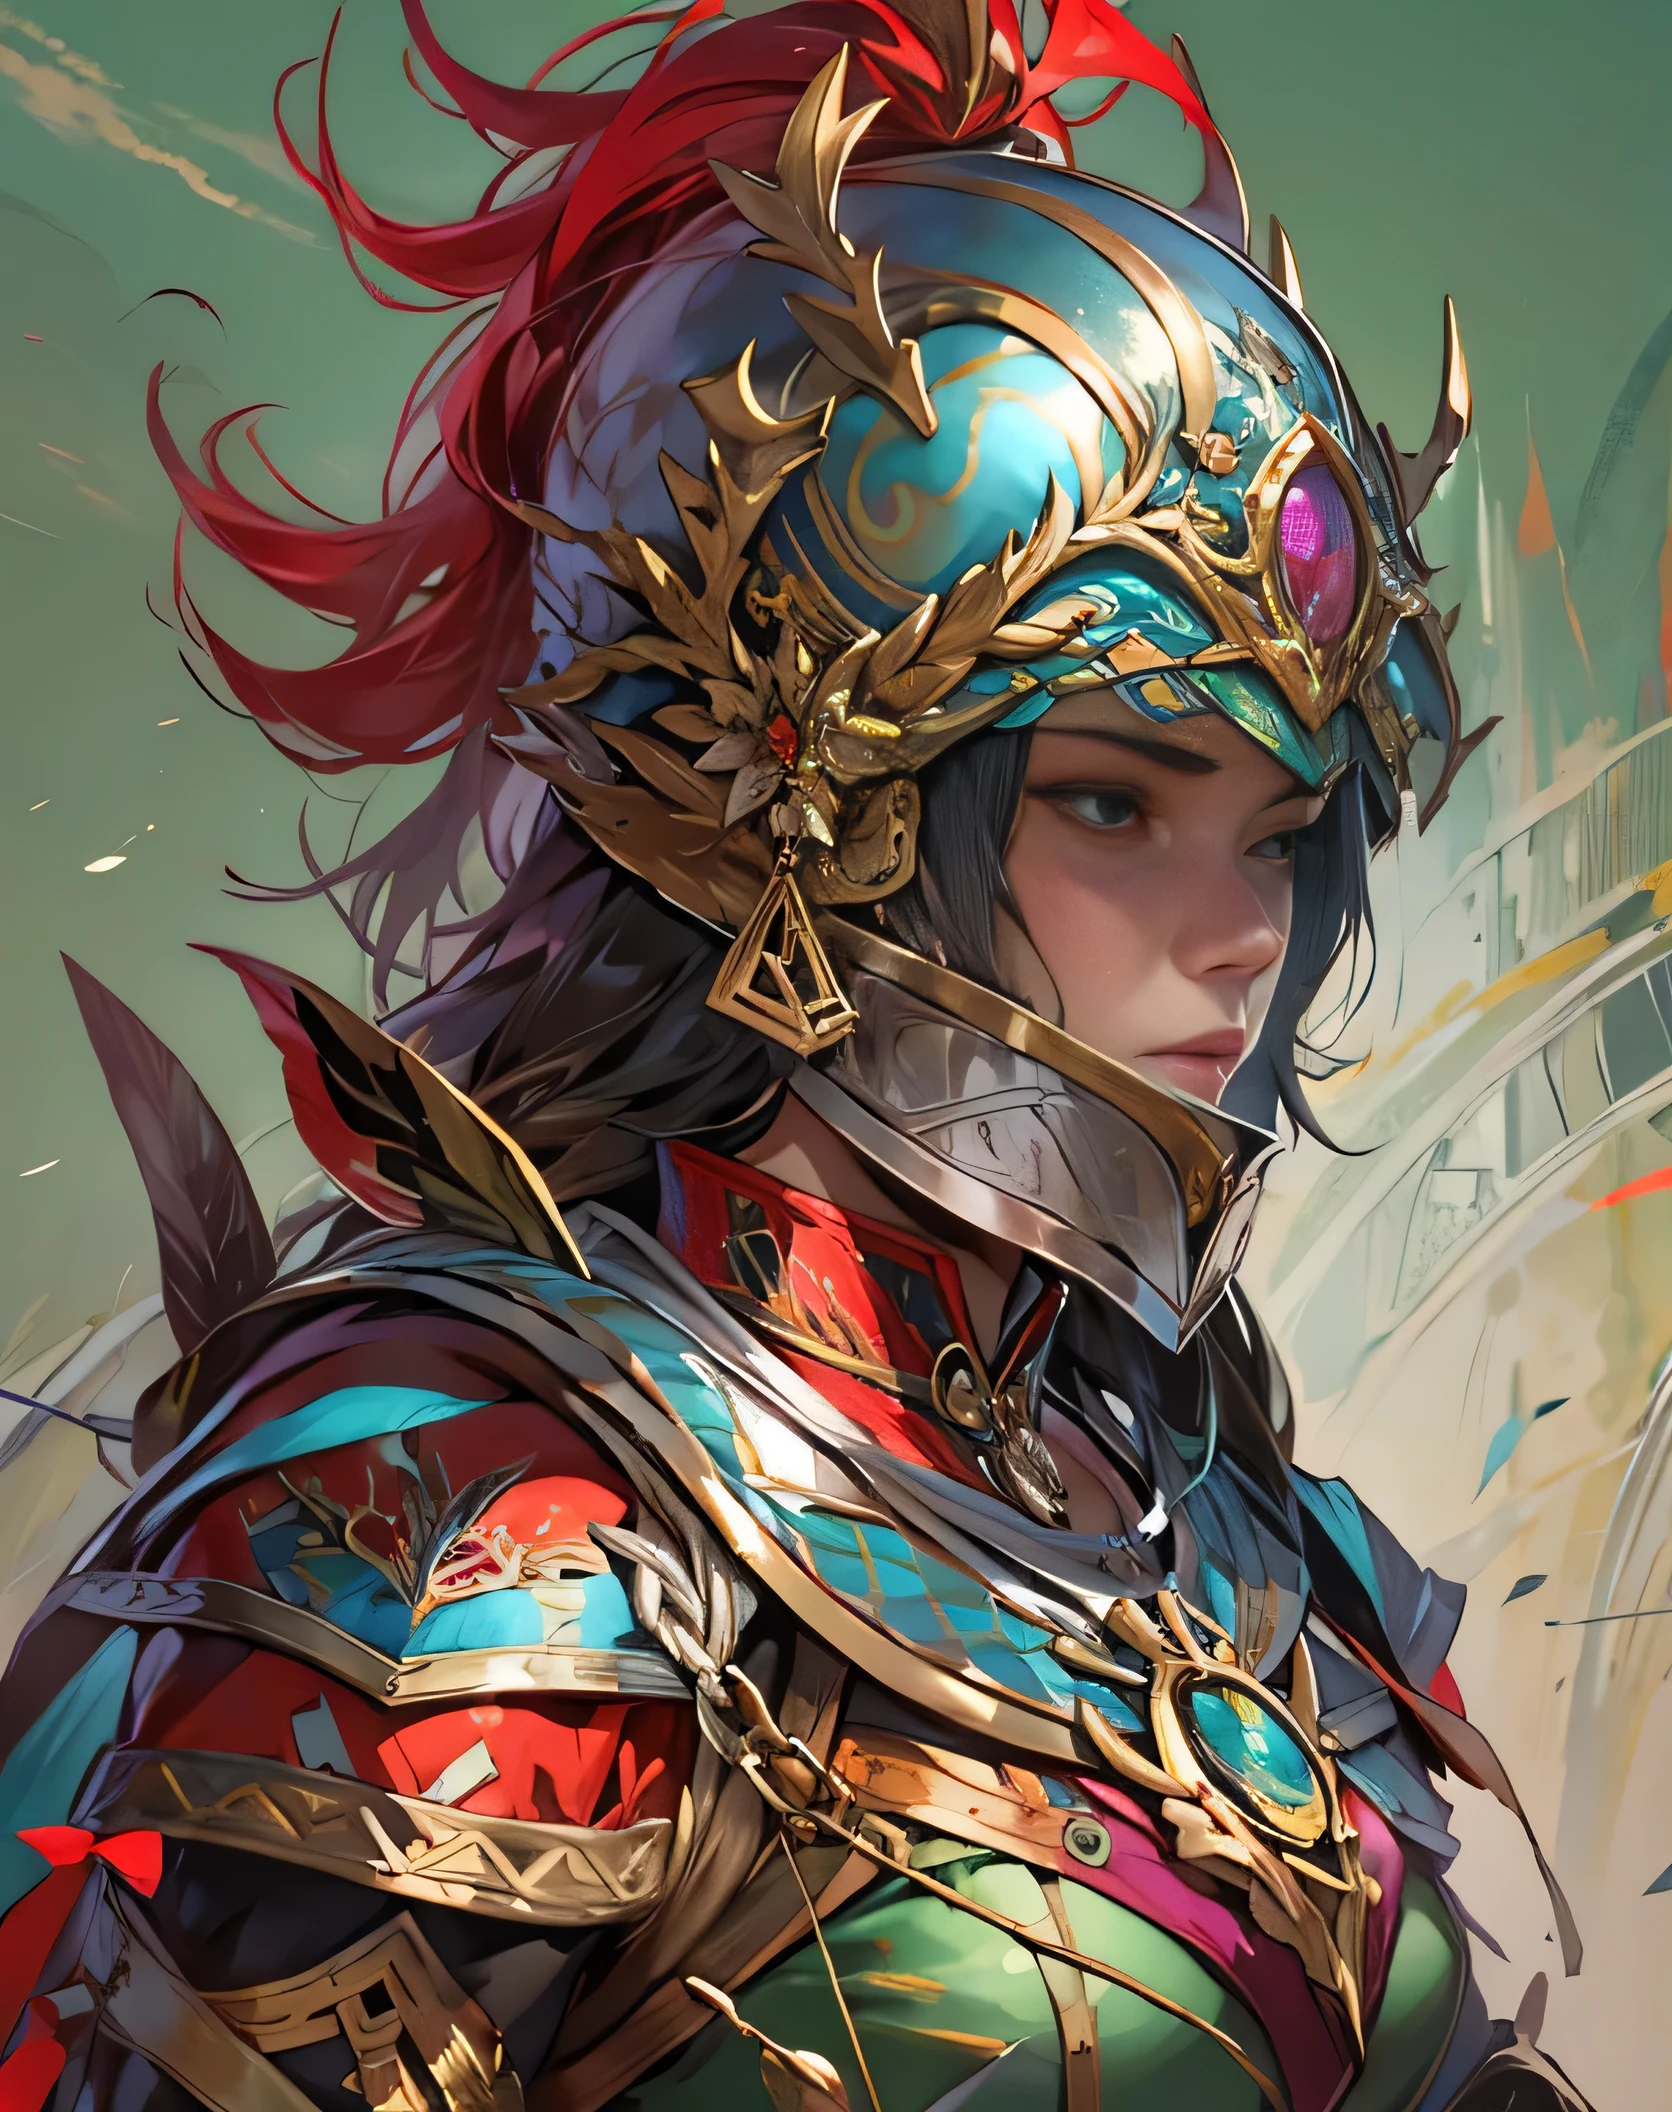 奇幻风格, 女将军&#39;的头盔, 赤铁铠甲, 多彩的设计, 头盔掉在地板上, 银色和红色的合奏,